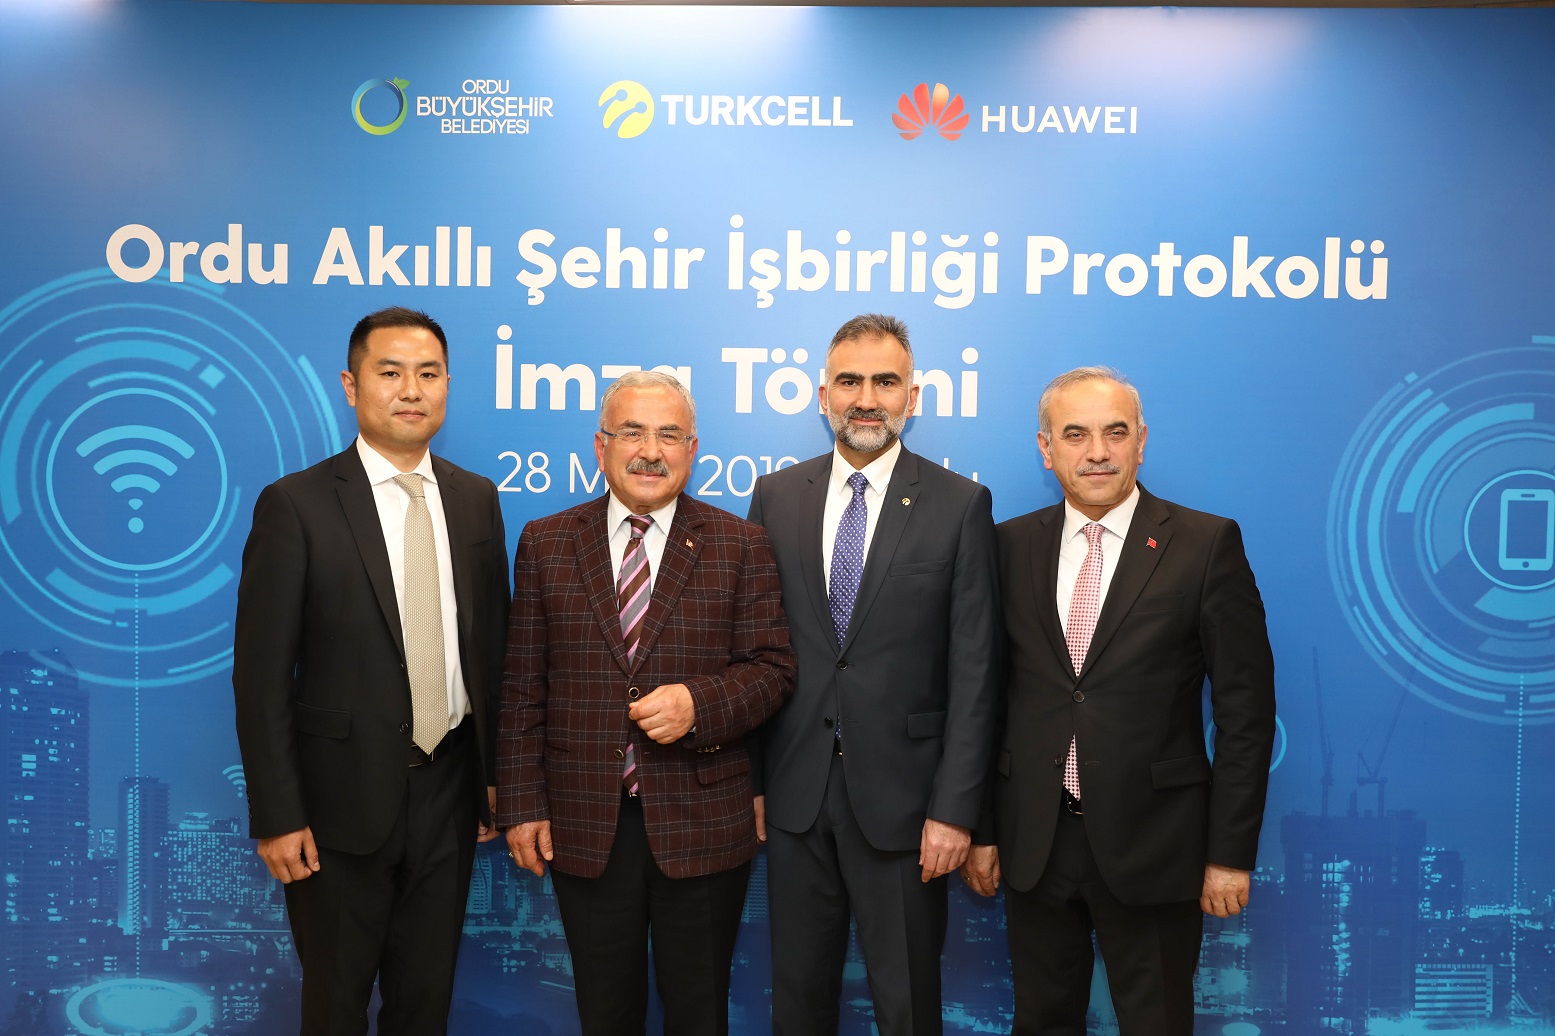 Turkcell ve Huawei Ordu’da akıllı şehir için İmza Attı